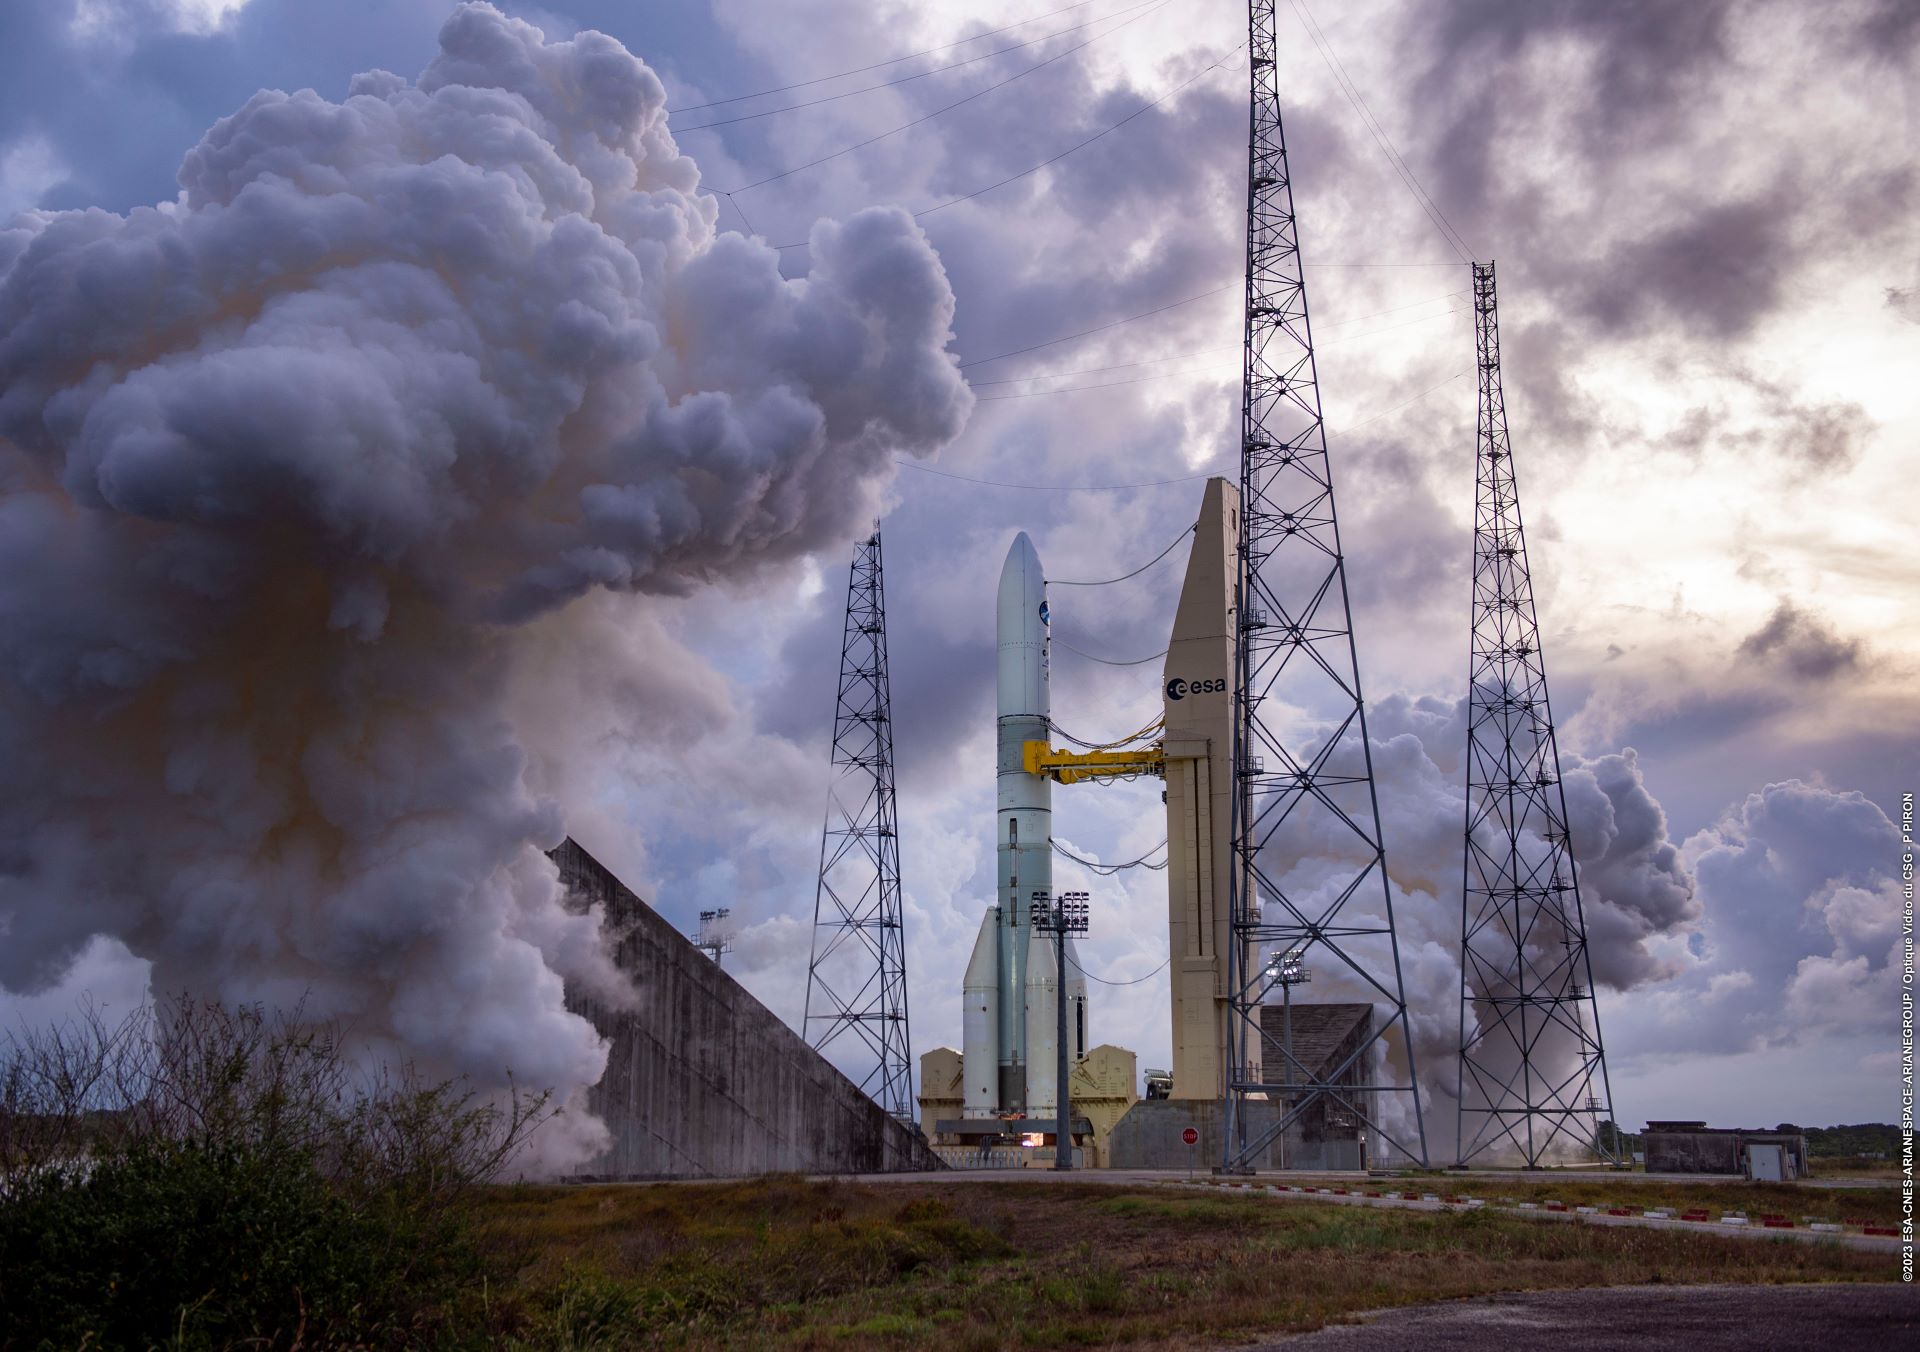     Direction l’espace ce mardi pour la toute première fusée Ariane 6 

